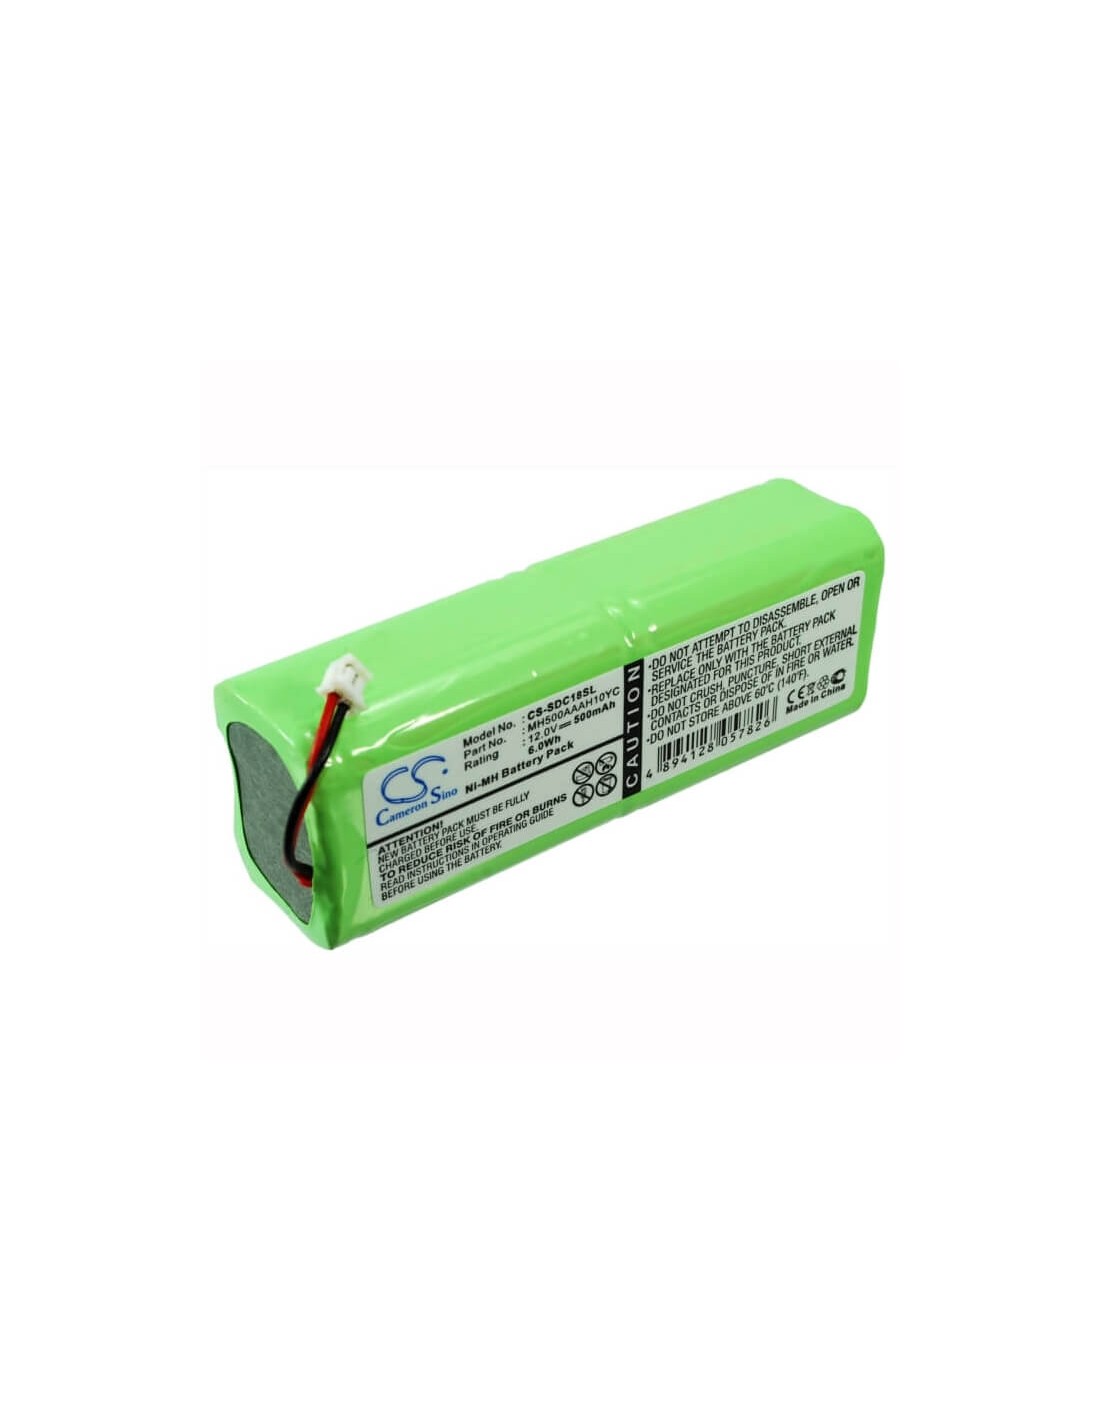 Battery for Sportdog Sd-2500 Transmitter 12.0V, 500mAh - 6.00Wh